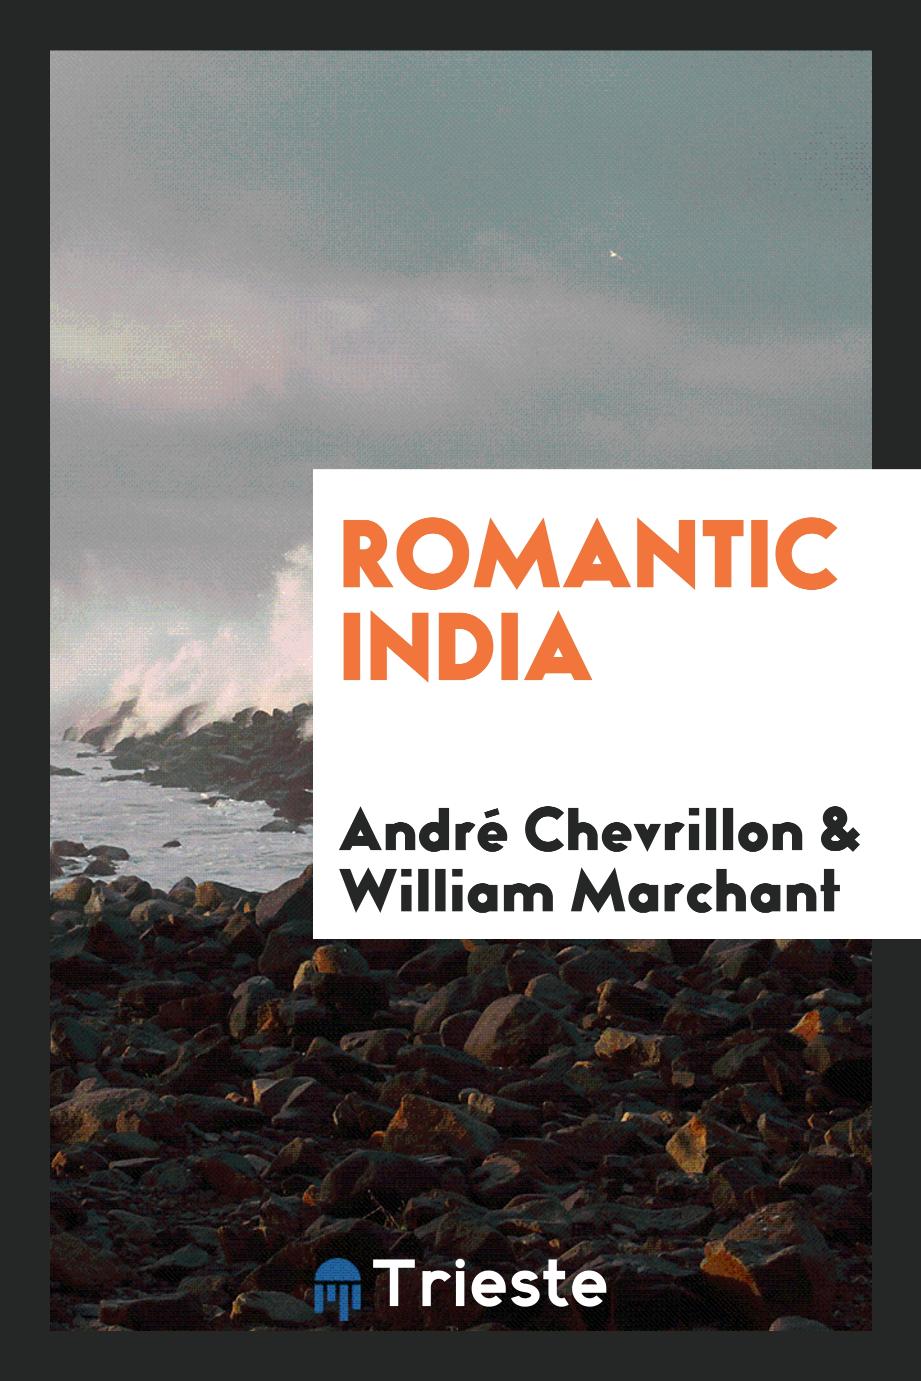 Romantic India